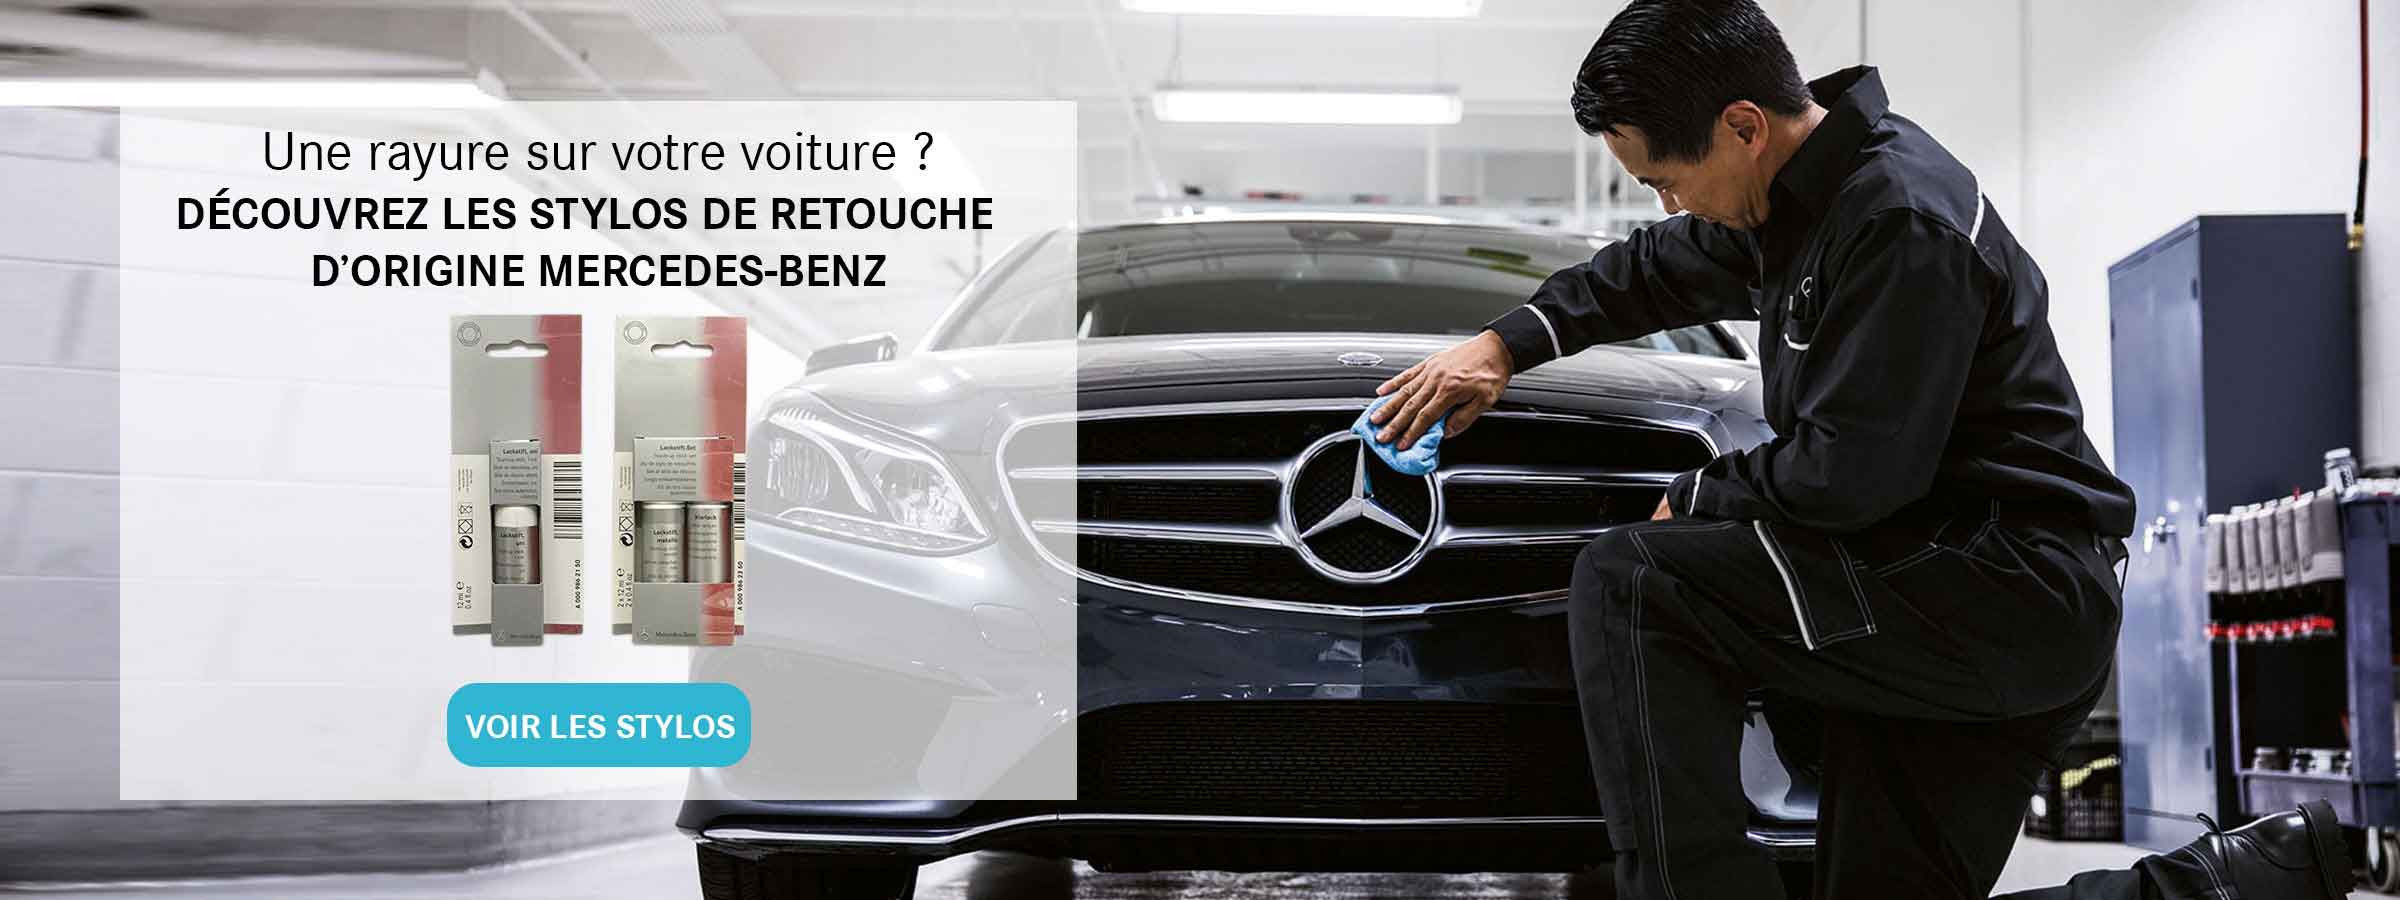 Accessoires Mercedes Benz  Achetez des accessoires sur mesure pour Mercedes  Benz